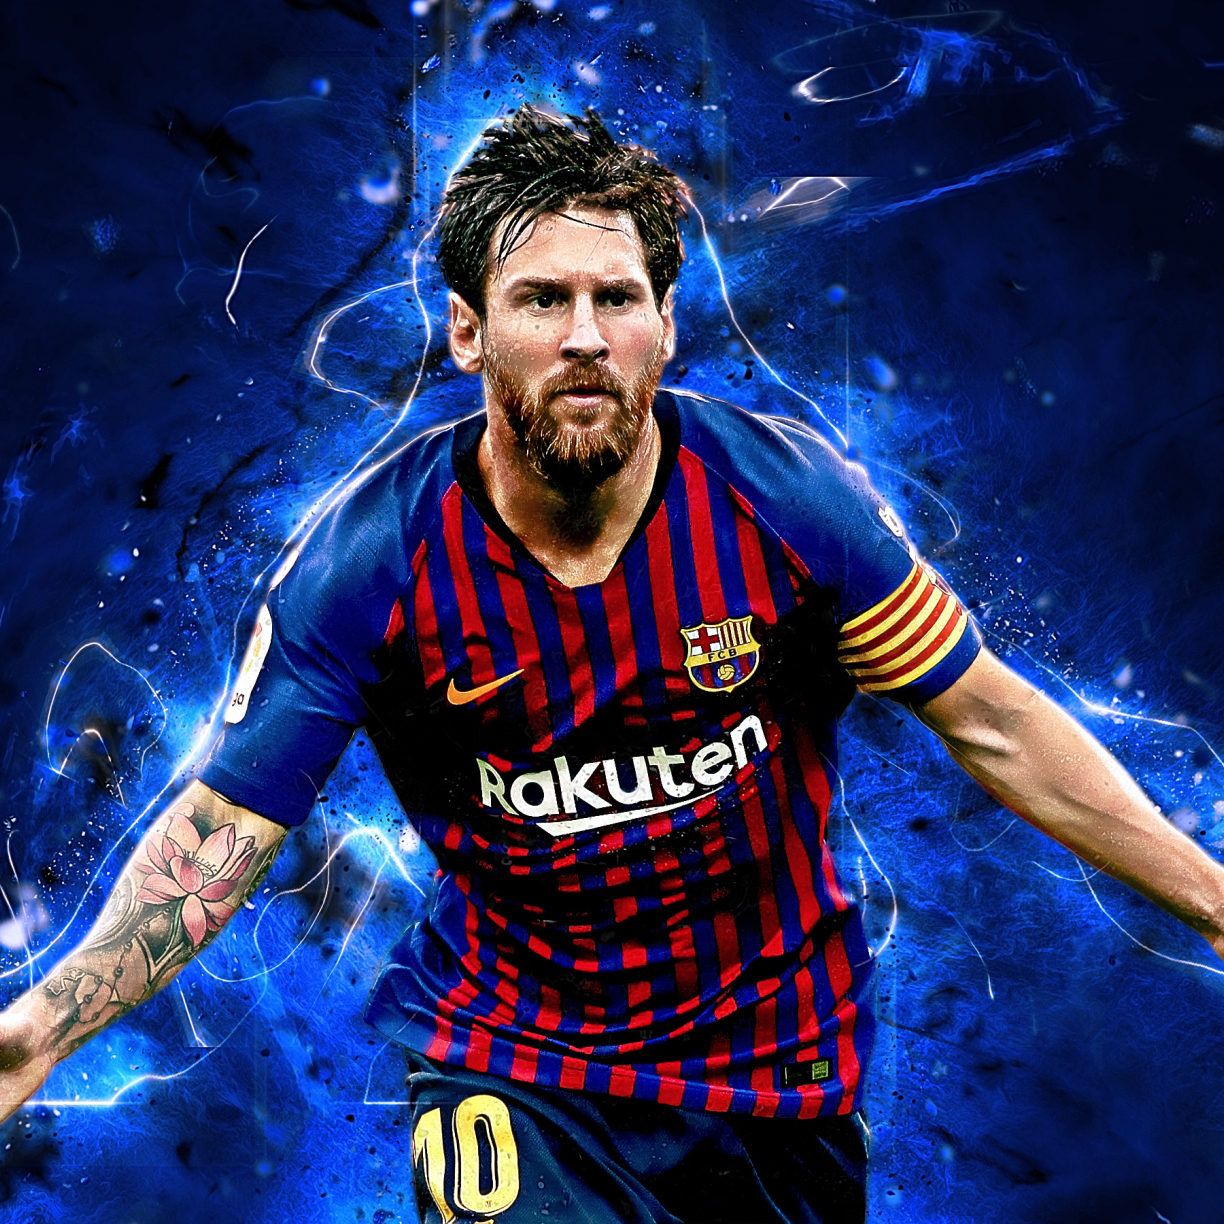 Lionel Messi, ngôi sao bóng đá nổi tiếng thế giới, là một trong những nghệ sĩ tuyệt vời nhất của chúng ta. Hãy xem những tác phẩm nghệ thuật liên quan đến cầu thủ này và khám phá thêm về Messi.